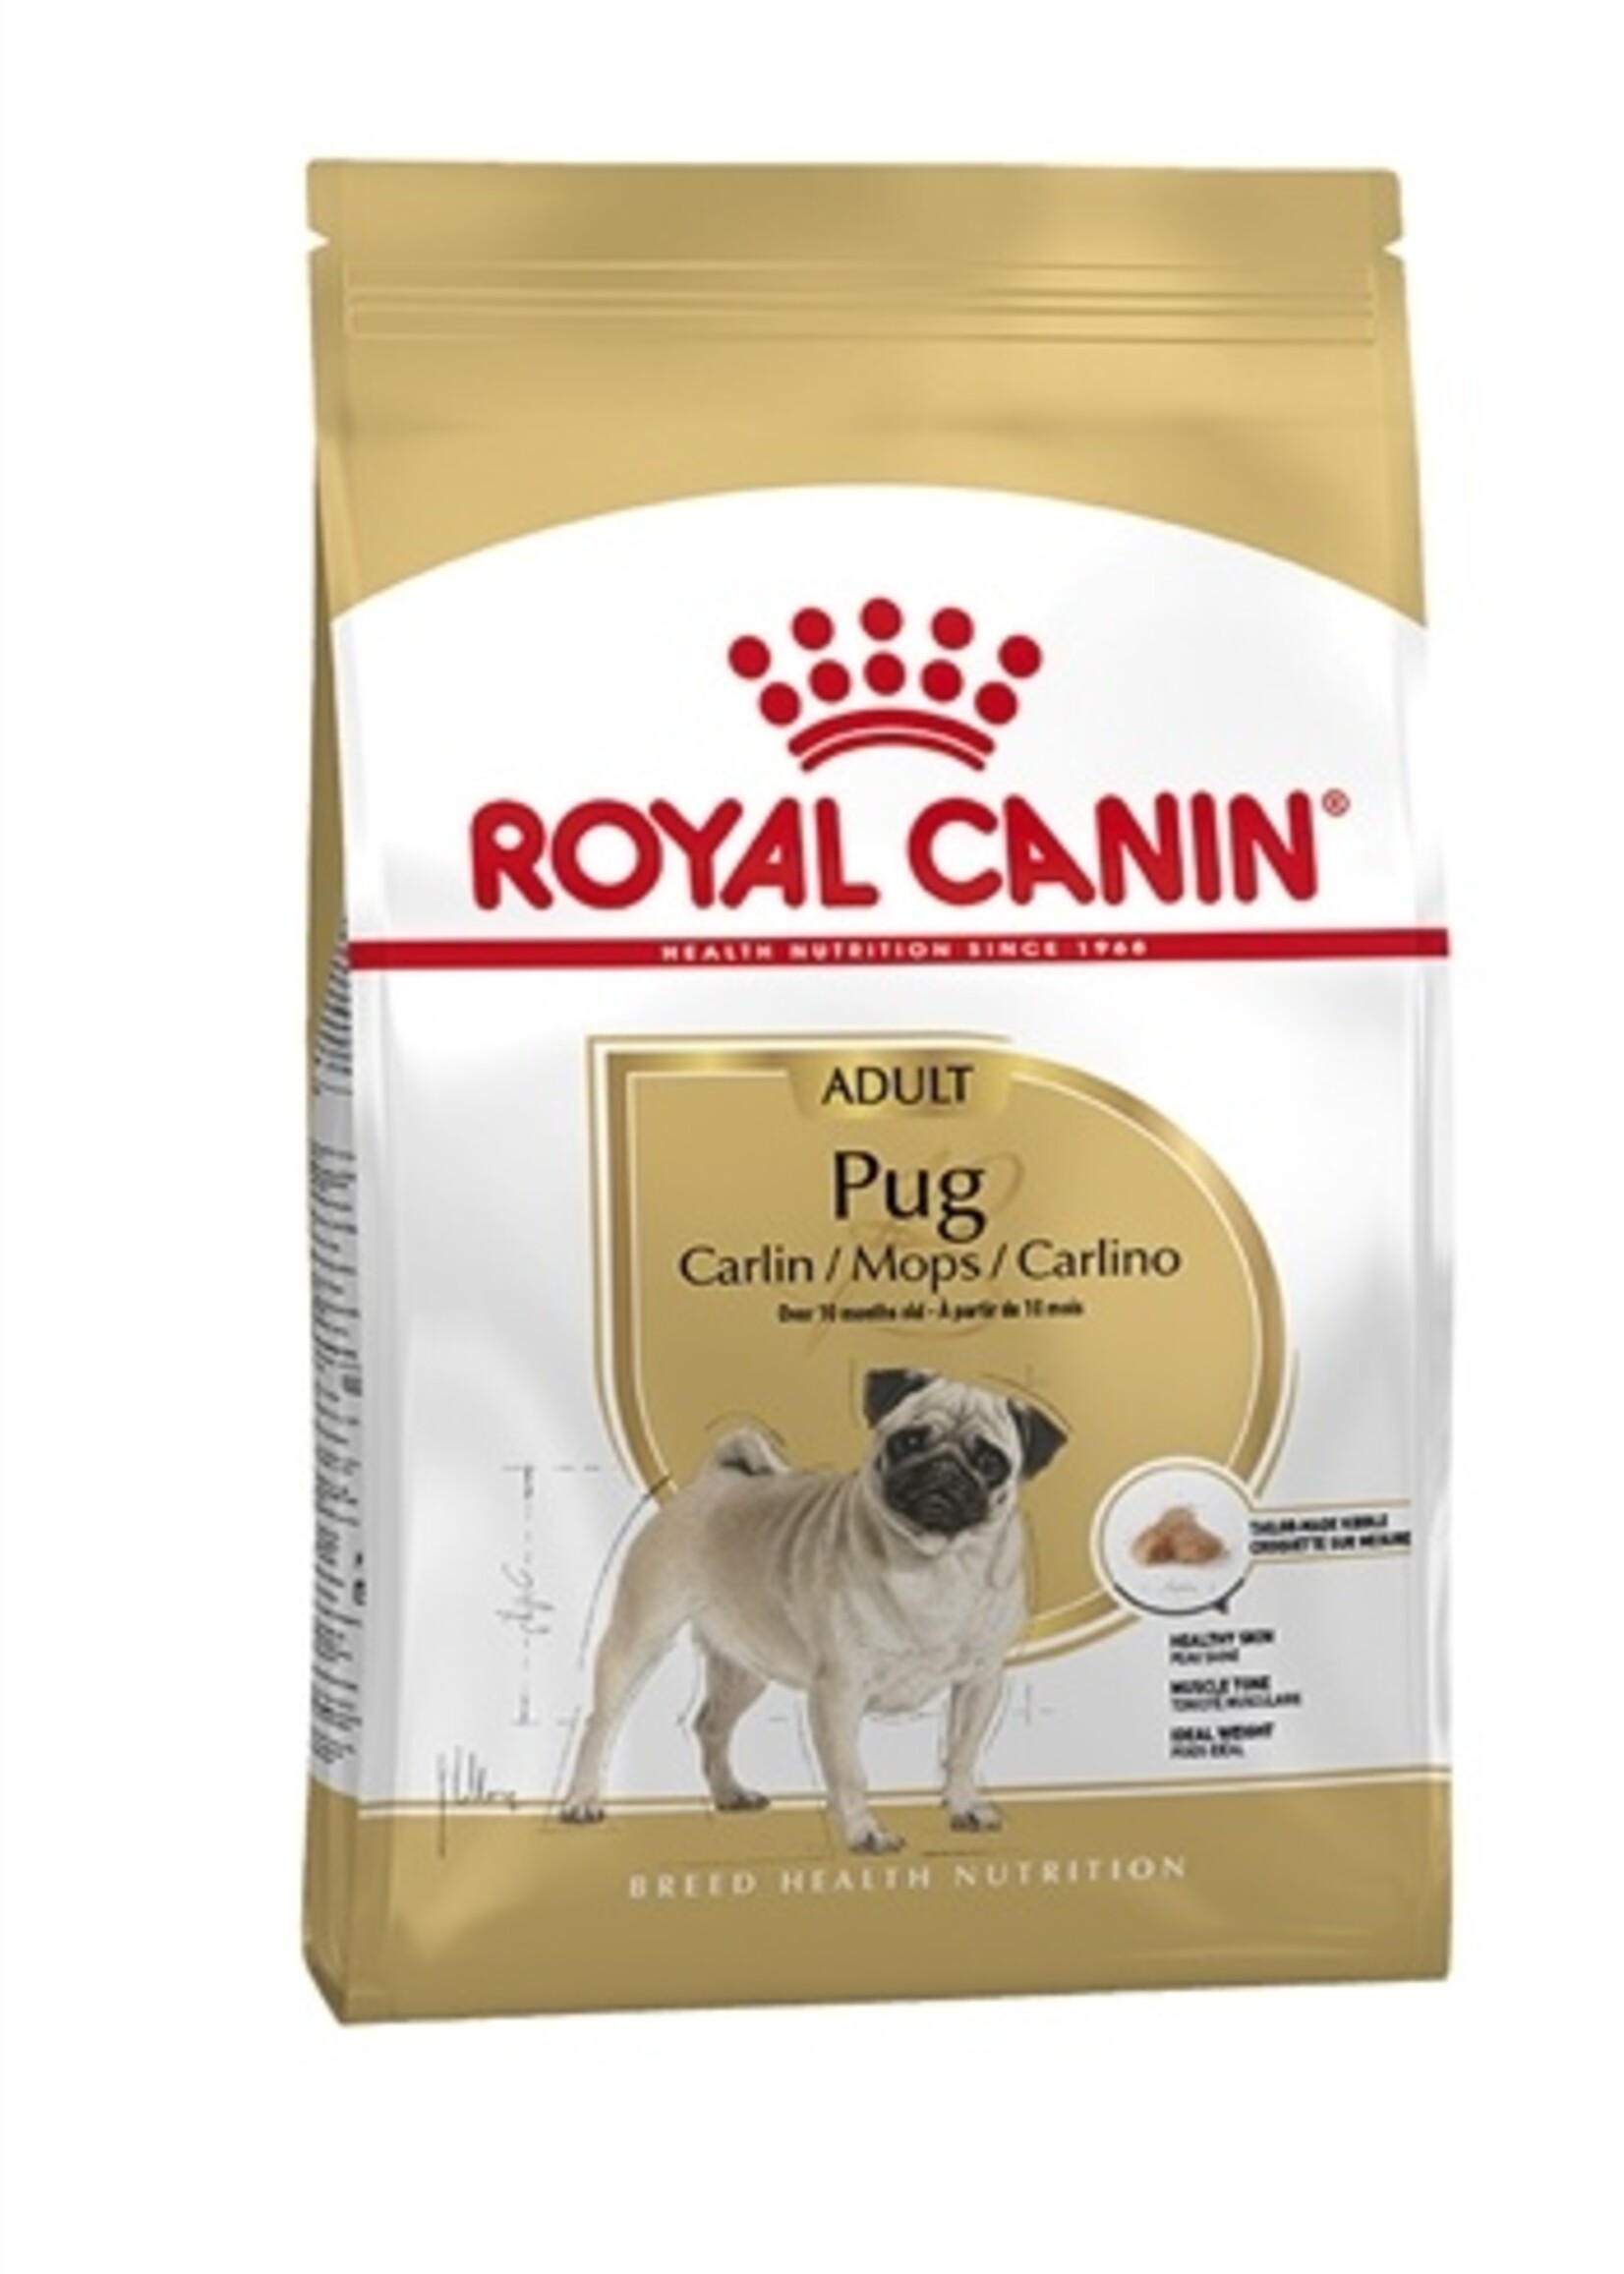 Royal canin Royal canin pug mopshond